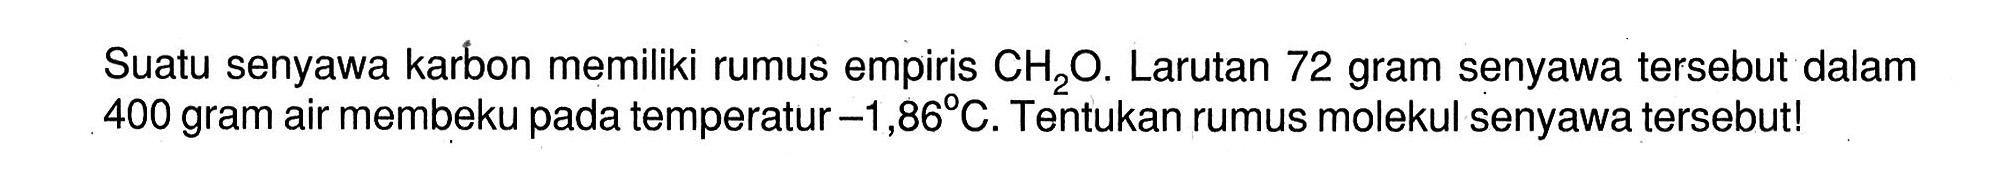 Suatu senyawa karbon memiliki rumus empiris CH2O. Larutan 72 gram senyawa tersebut dalam 400 gram air membeku pada temperatur -1,86 C. Tentukan rumus molekul senyawa tersebut!